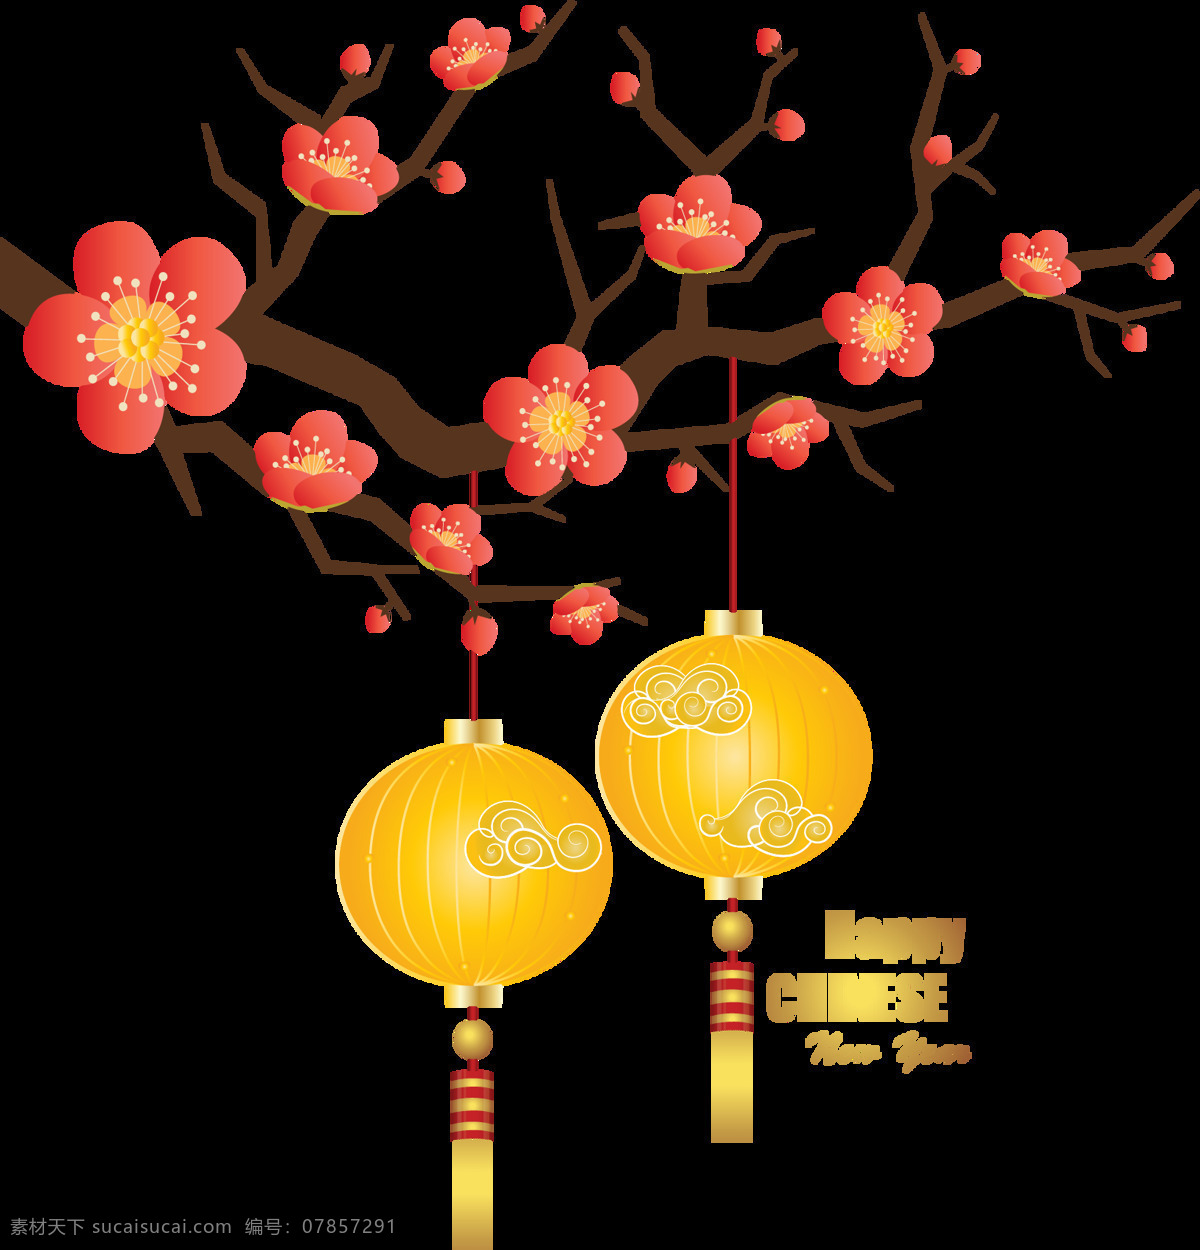 清新 高级 亮 黄色 灯笼 节日 元素 红色梅花 黄色灯笼 节日元素 深色树枝